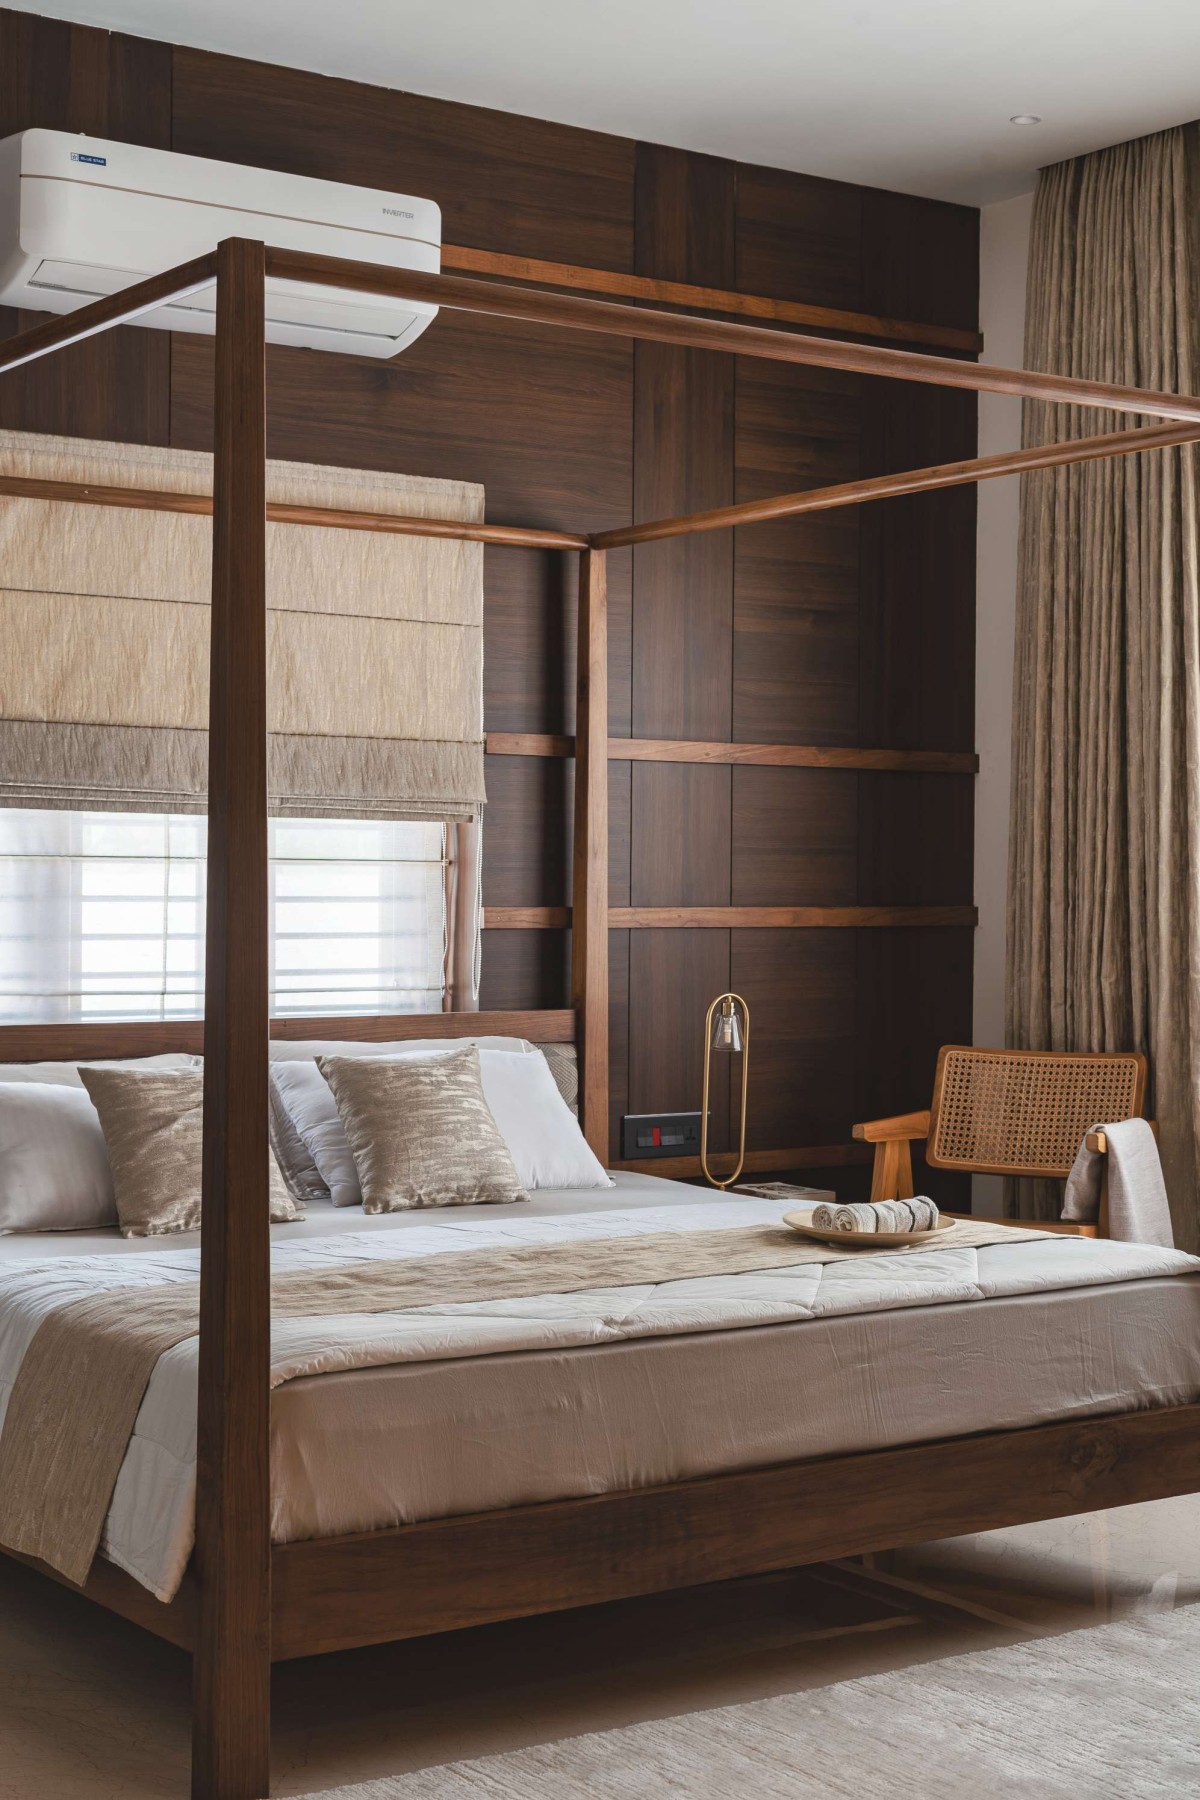 Bedroom of Avant Garde by Prekshaa Design Studio